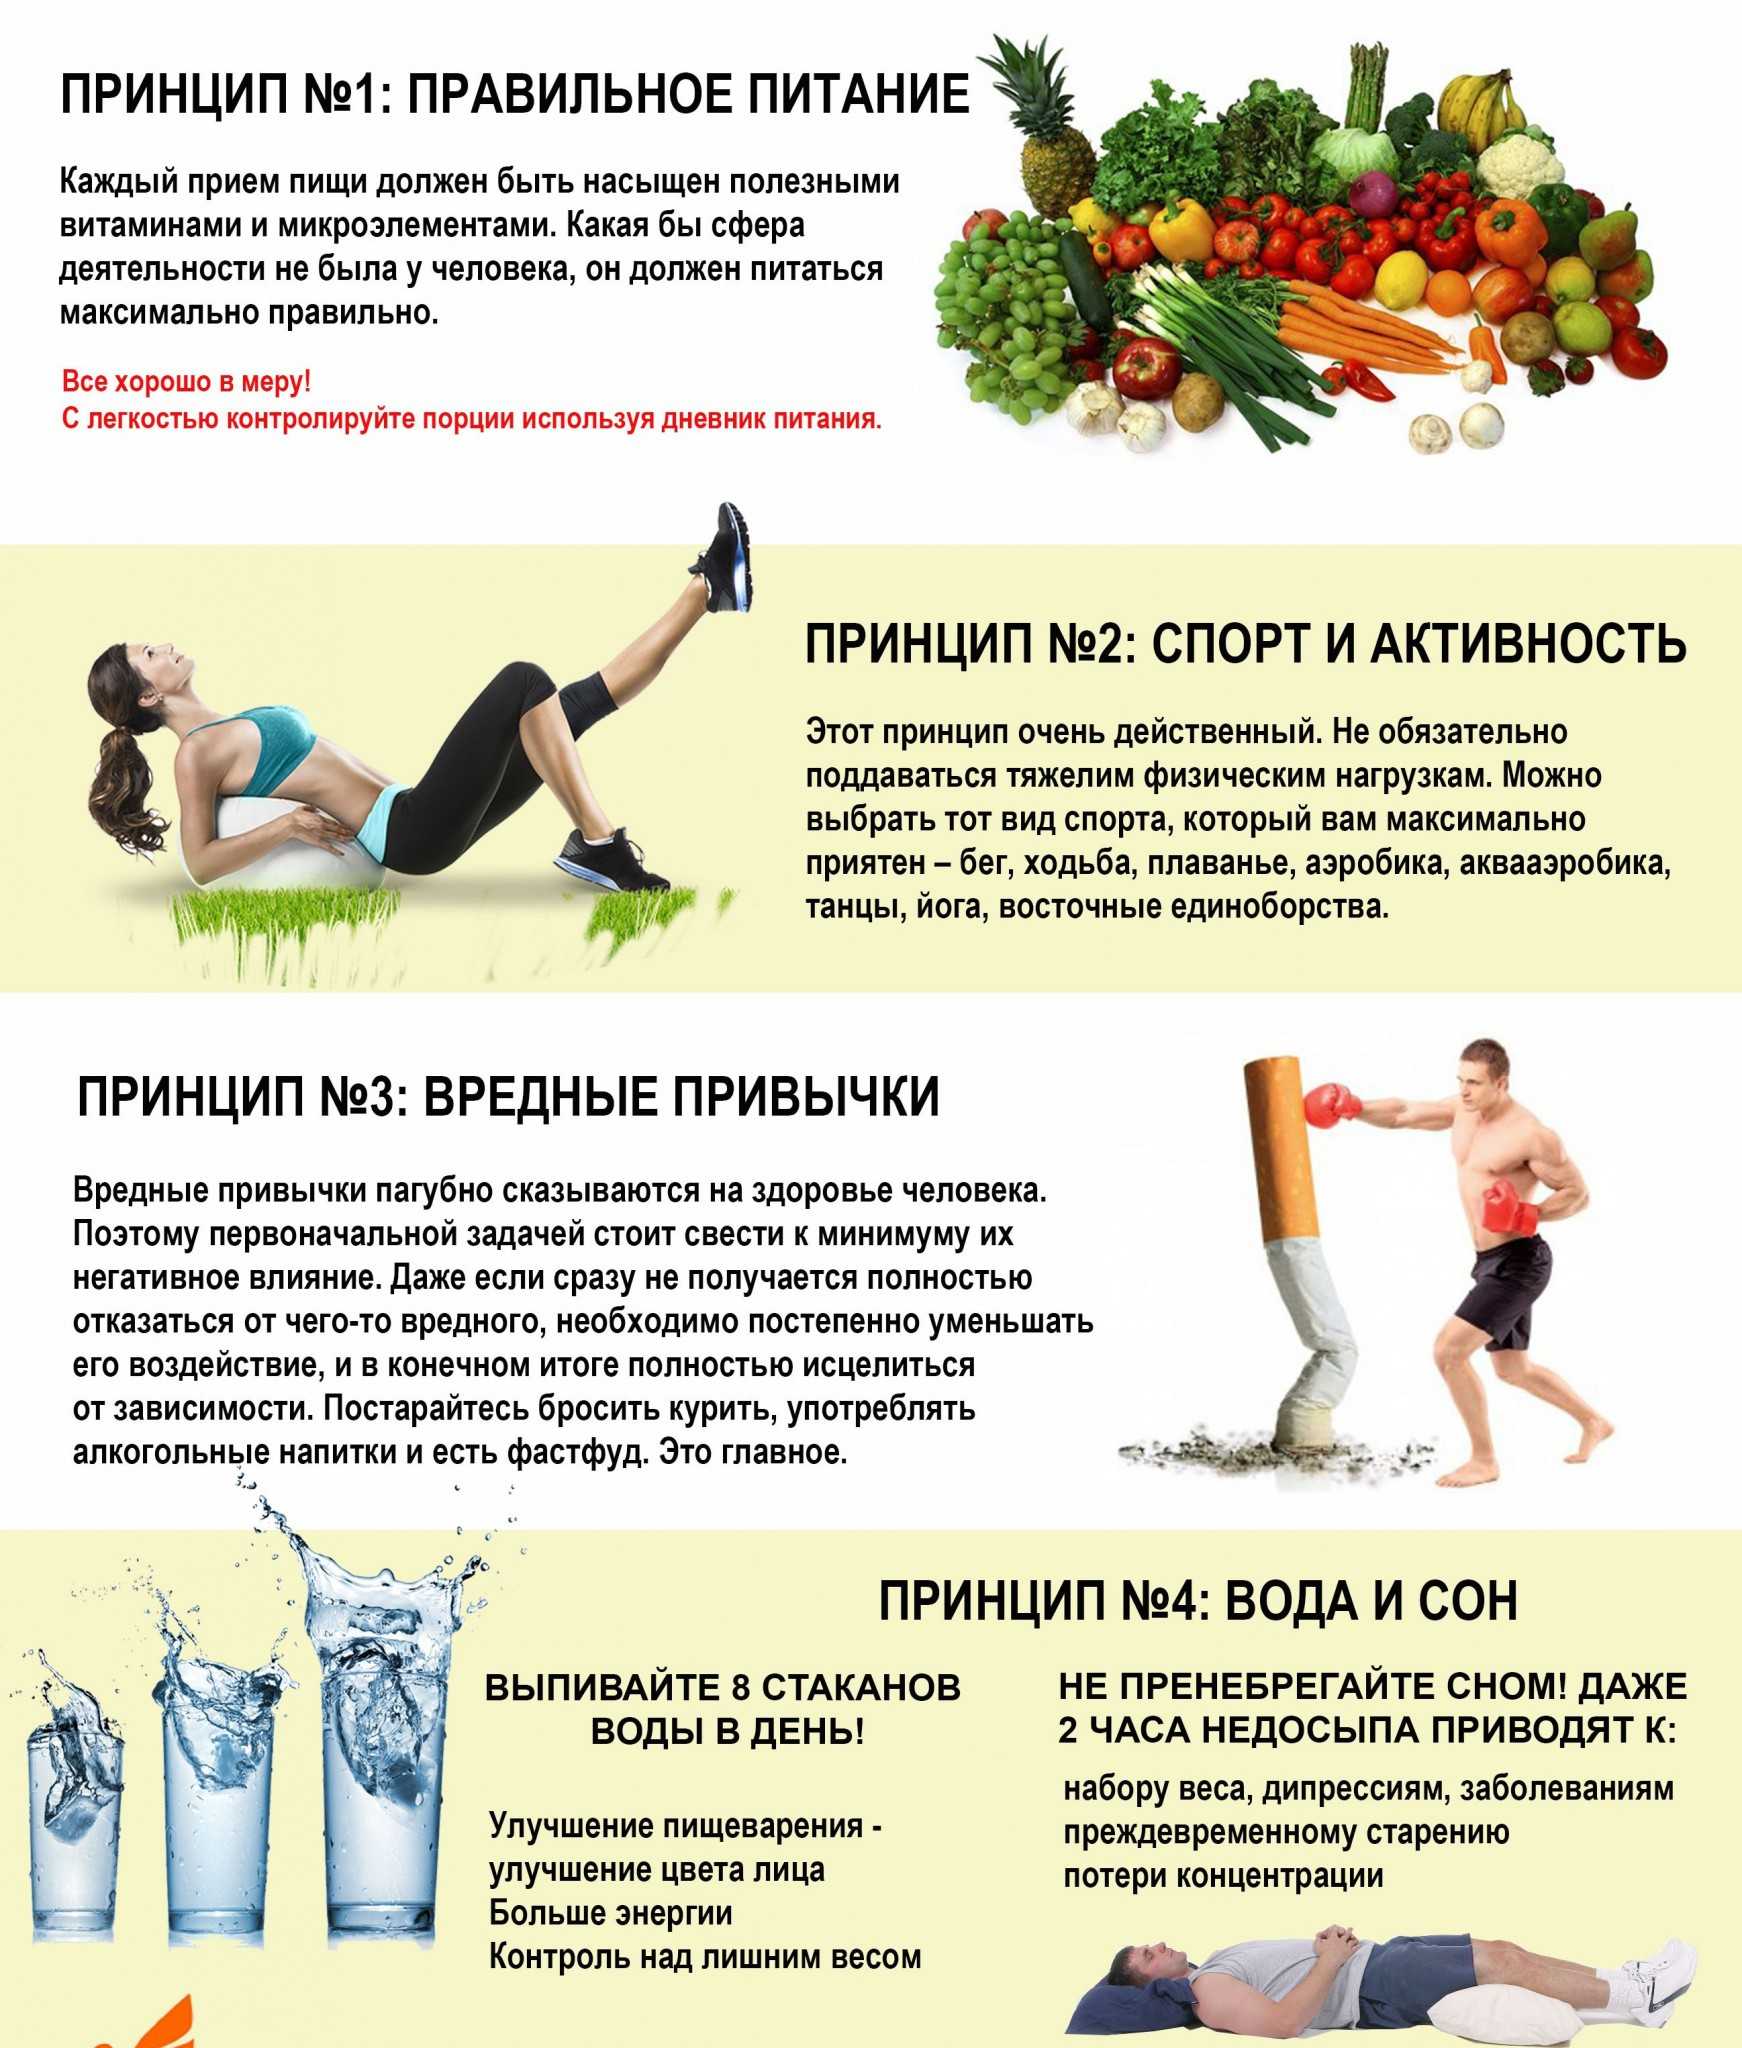 Здоровый образ жизни: основные принципы и рекомендации  - медицинский портал "здоровая чувашия"